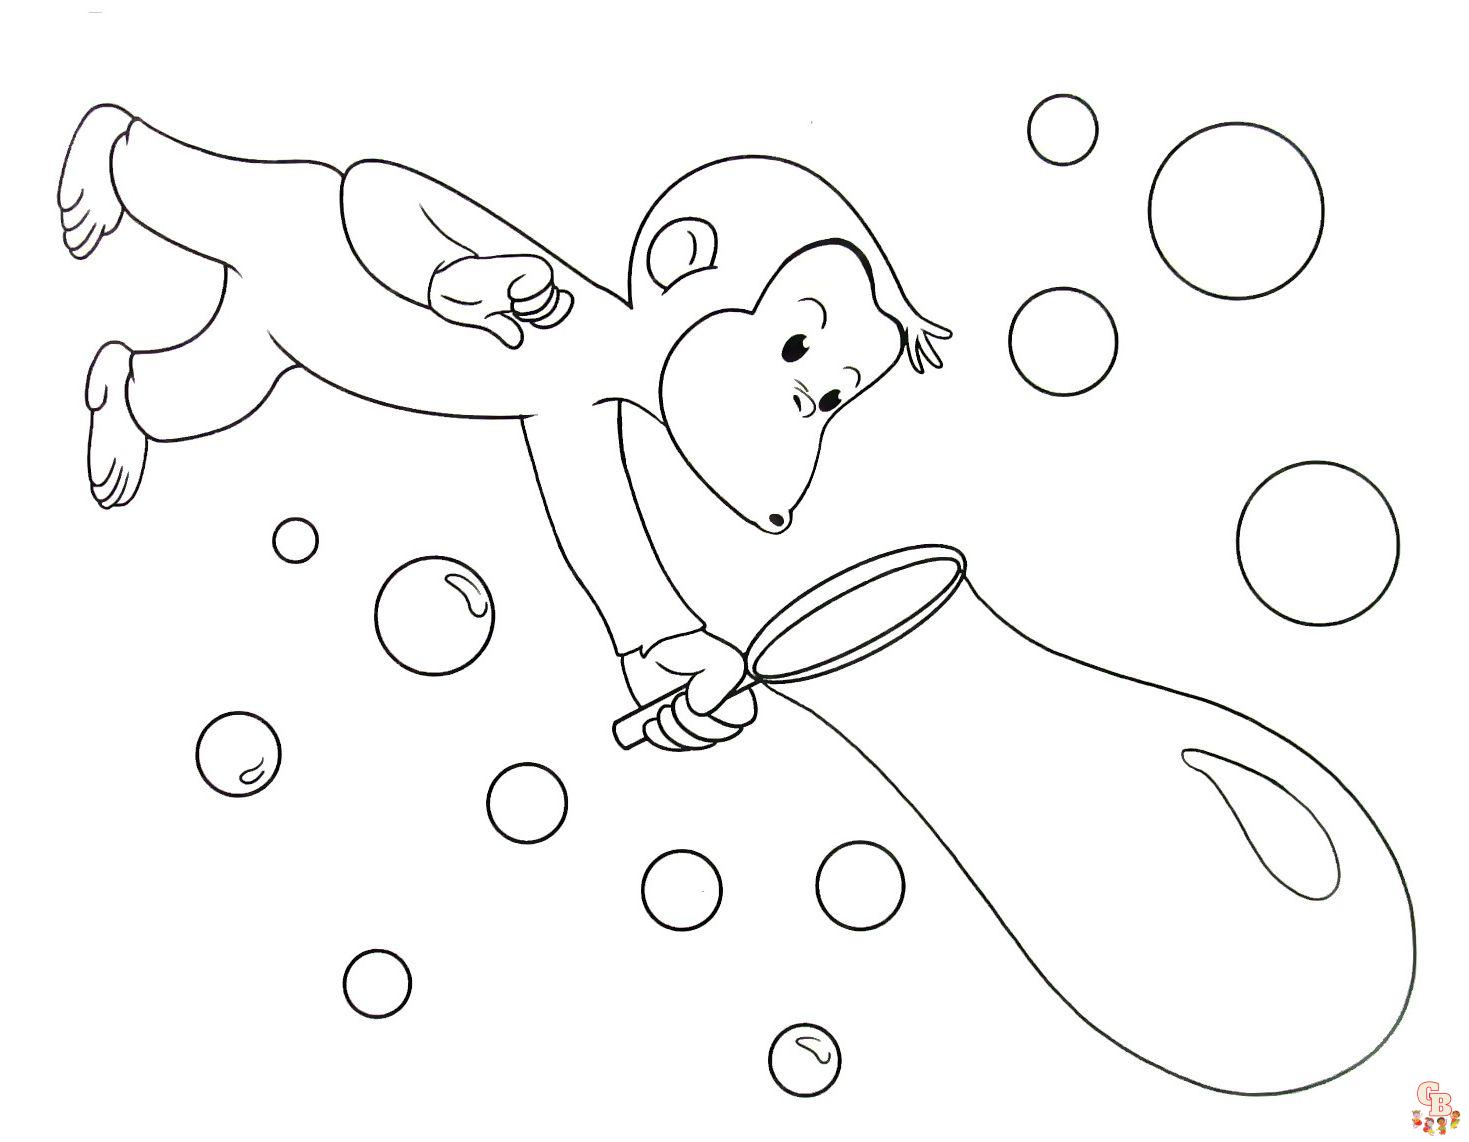 Fun and Free Bubbles Ausmalbilder für Kinder | Druckbar und einfach